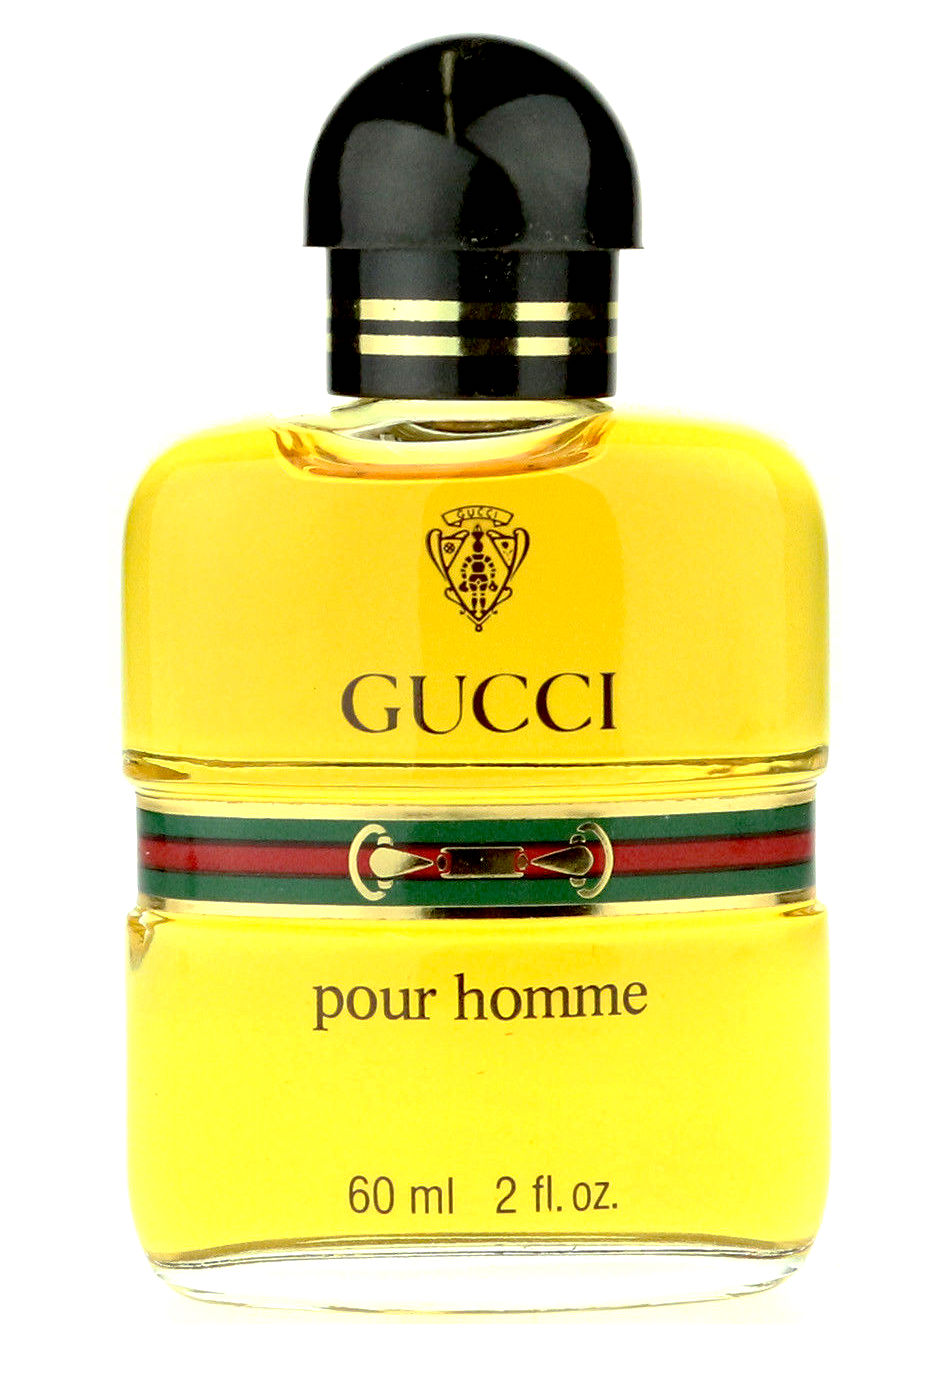 Gucci Pour Homme (1976)